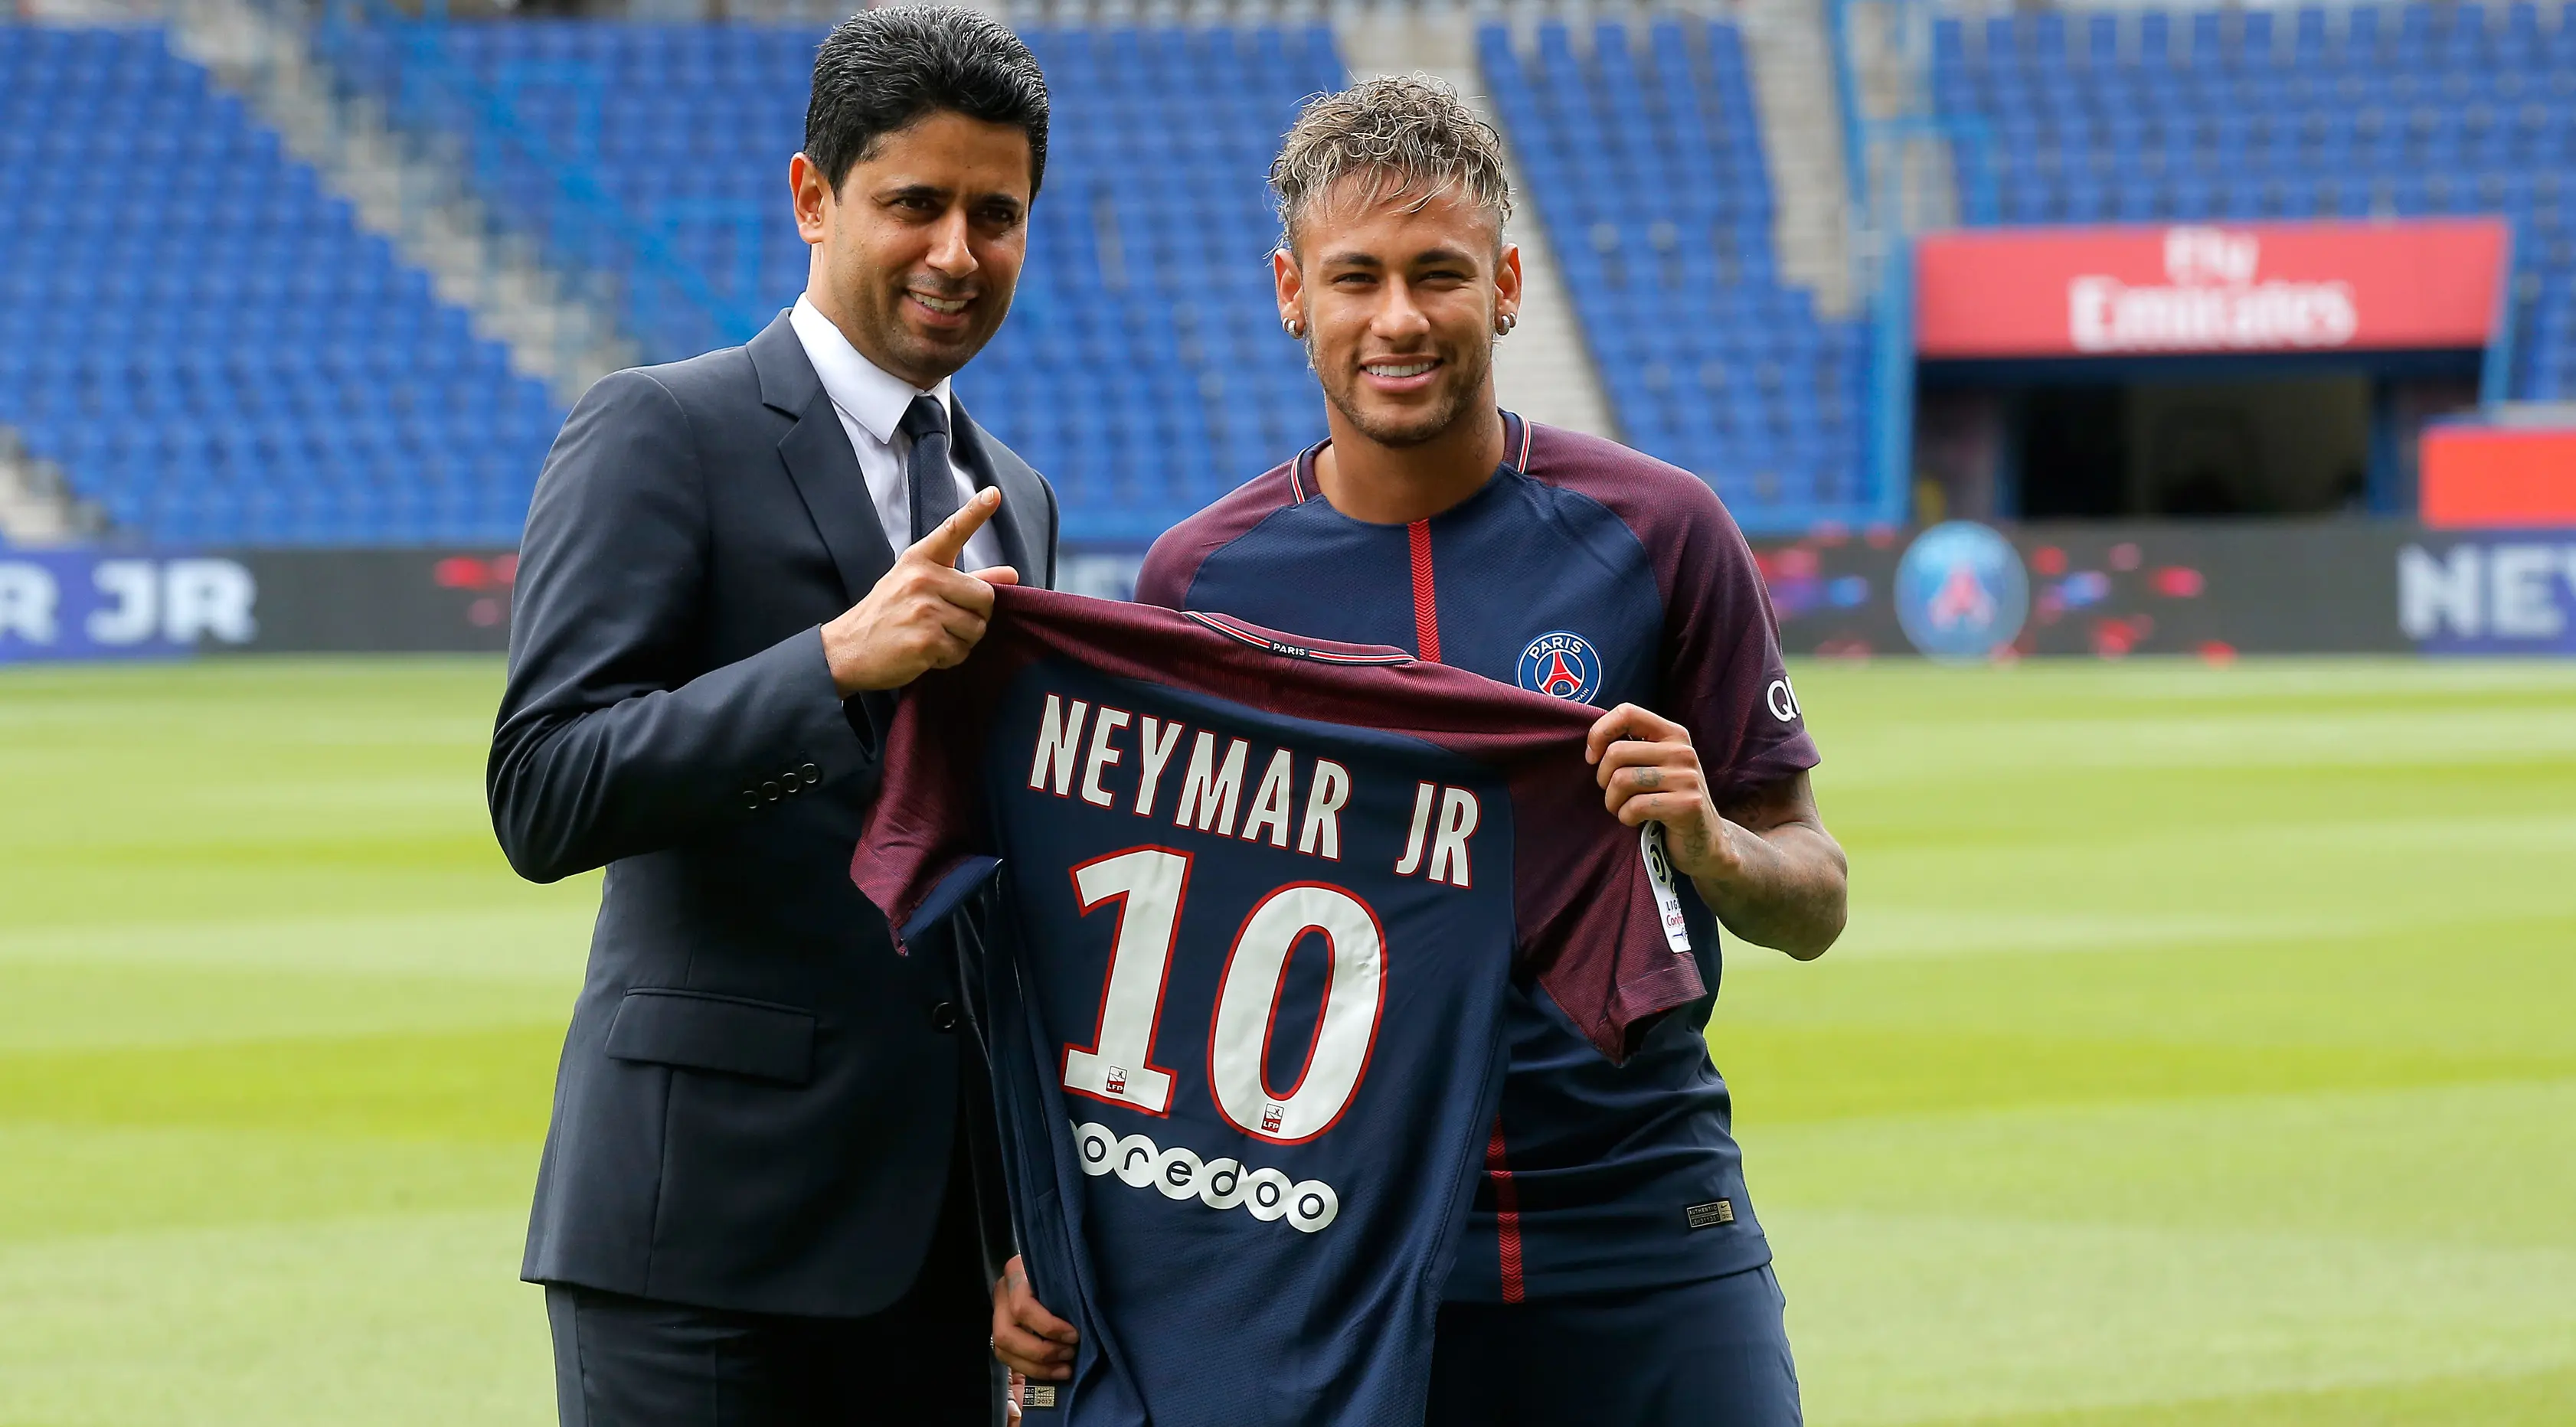 Neymar Jr bersama CEO Nasser Al-Khelaifi menunjukkan jersey klub PSG usai resmi bergabung dalam konferensi pers bersama PSG di Paris, (4/8). PSG secara resmi telah mengontrak mantan pemain Barca itu selama lima tahun. (AP Photo/Michel Euler)